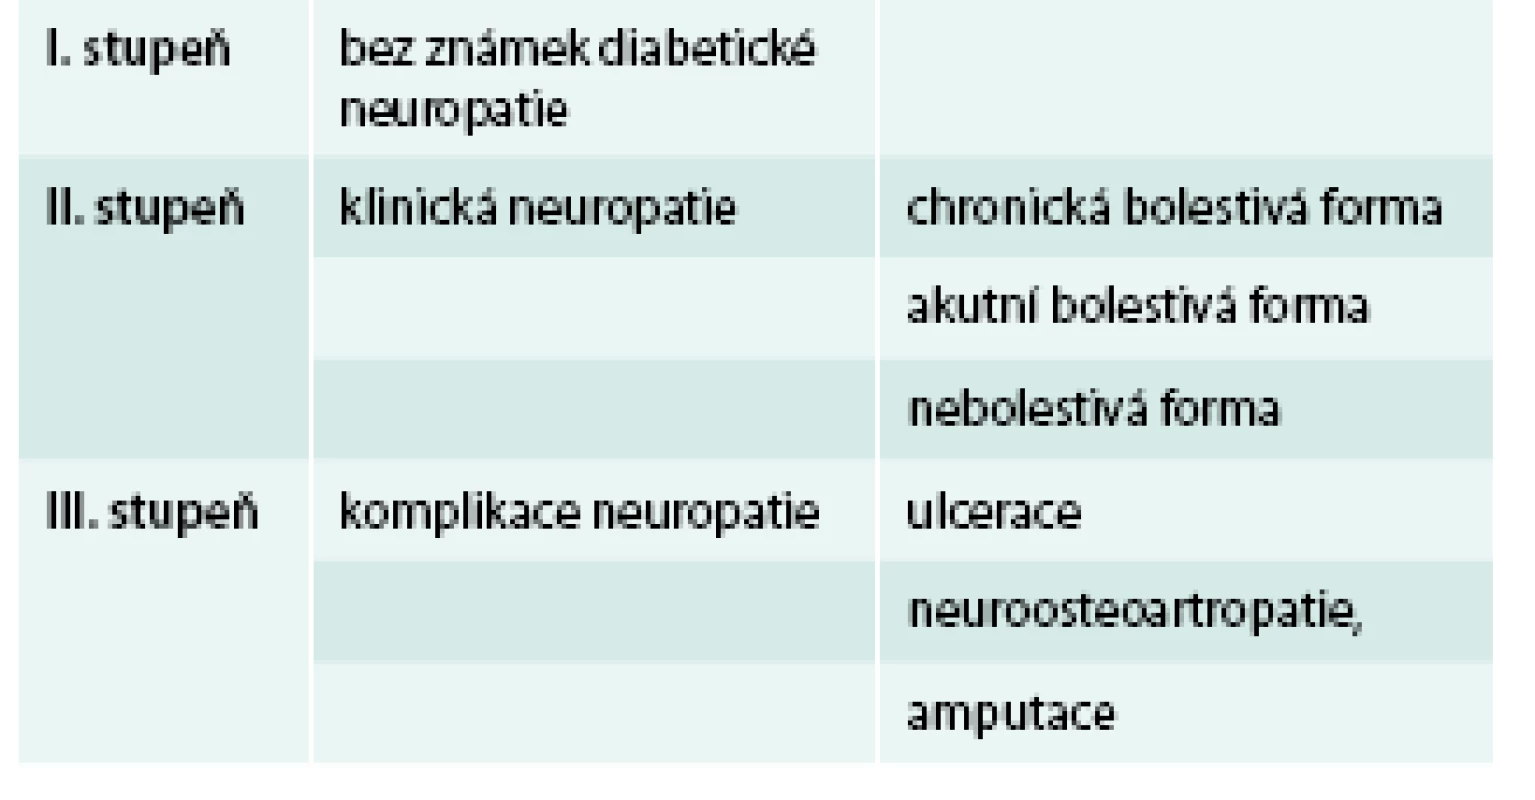 Stupně diabetické neuropatie dle Boultona et al (1998)